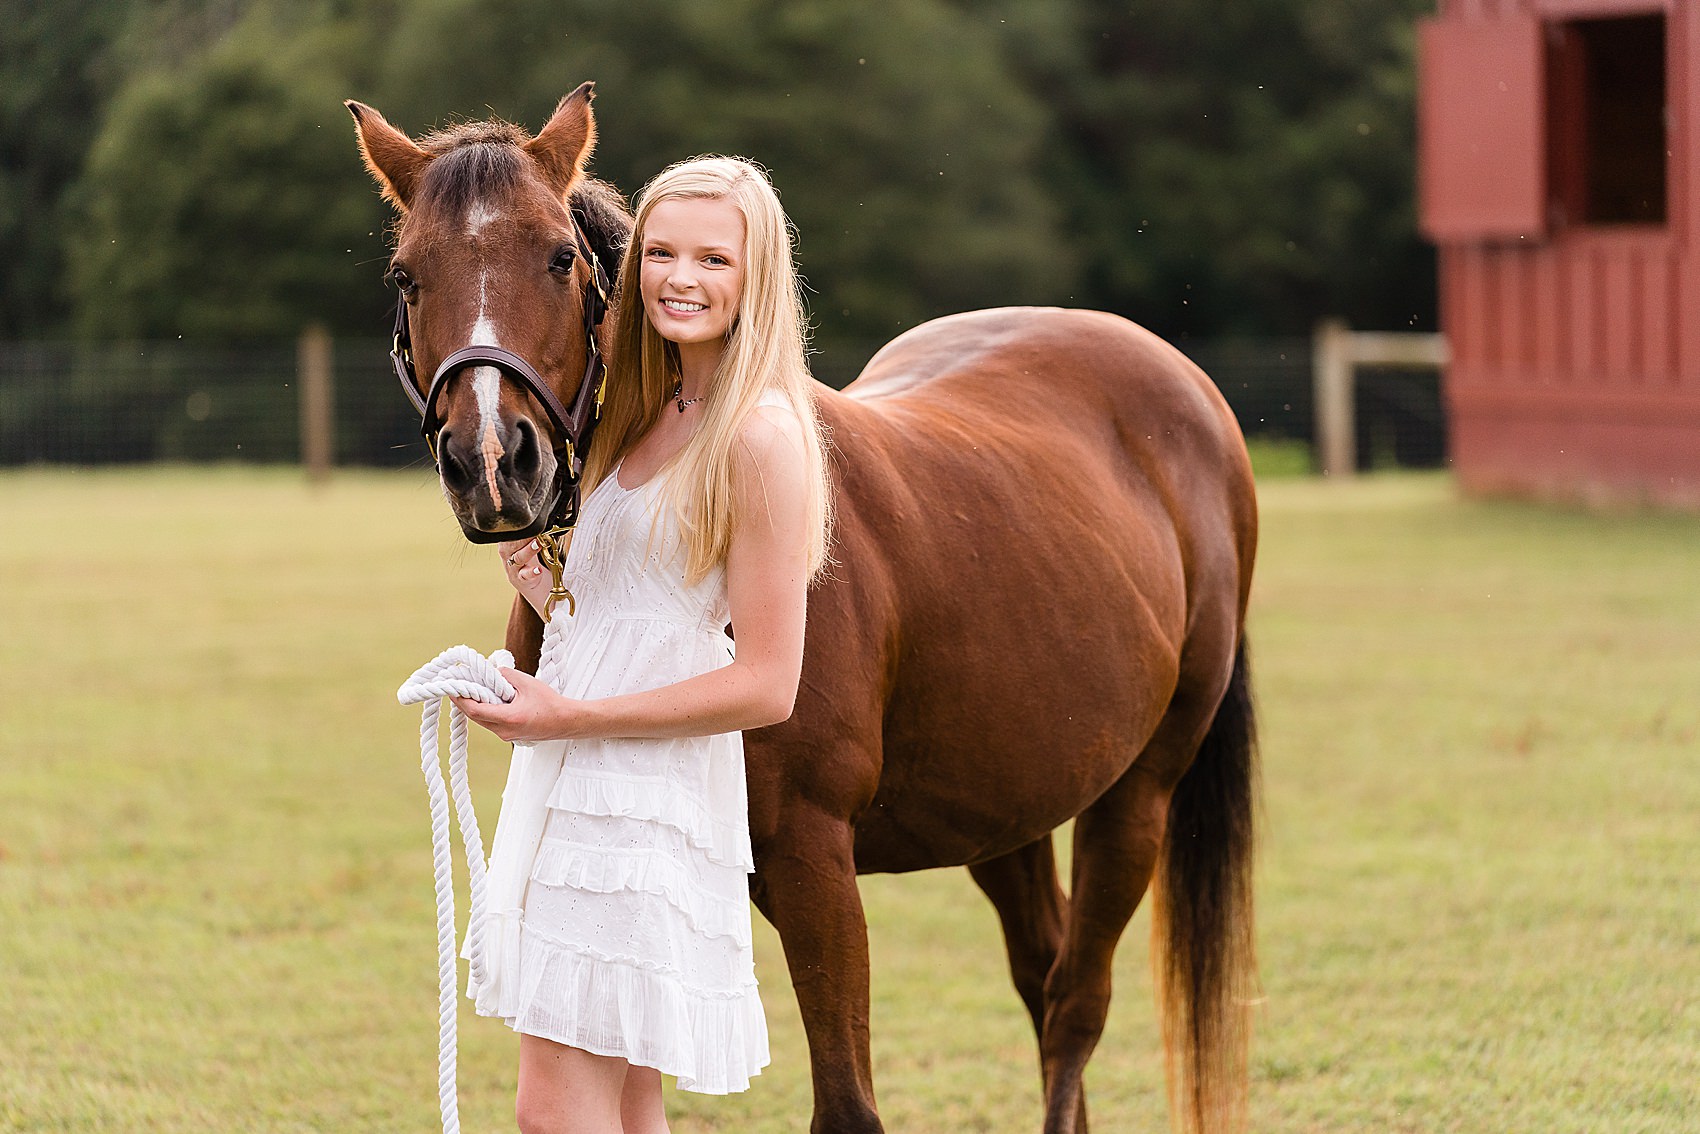 senior photos with horse on farm barn